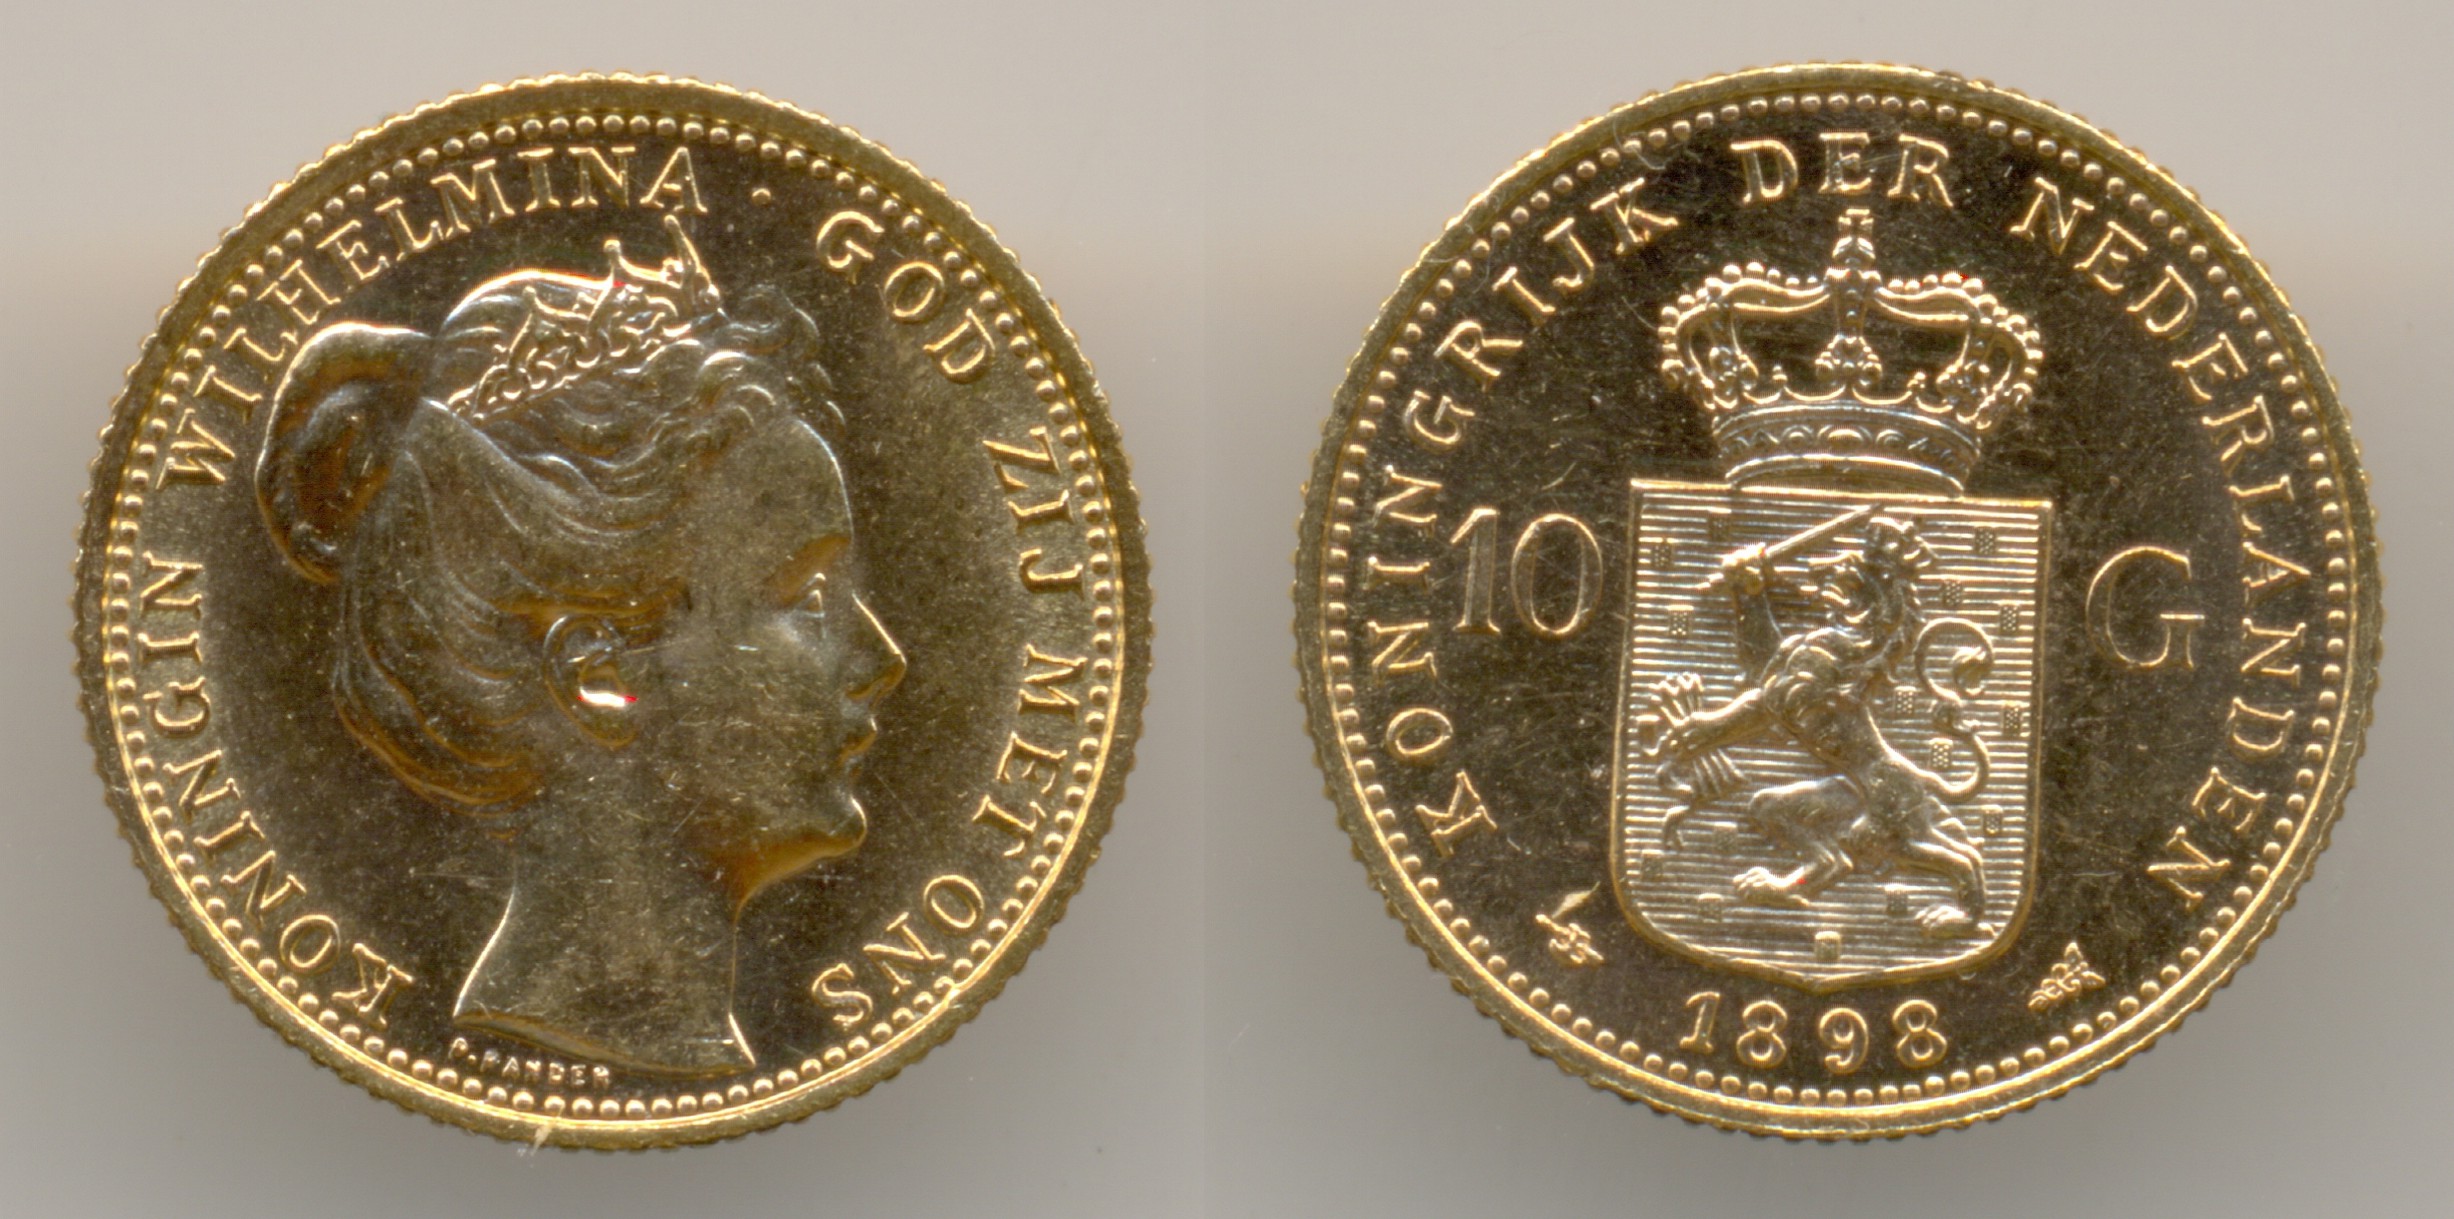 Нумизматика. Золотая монета. Нидерланды, 10 гульденов 1898 г.